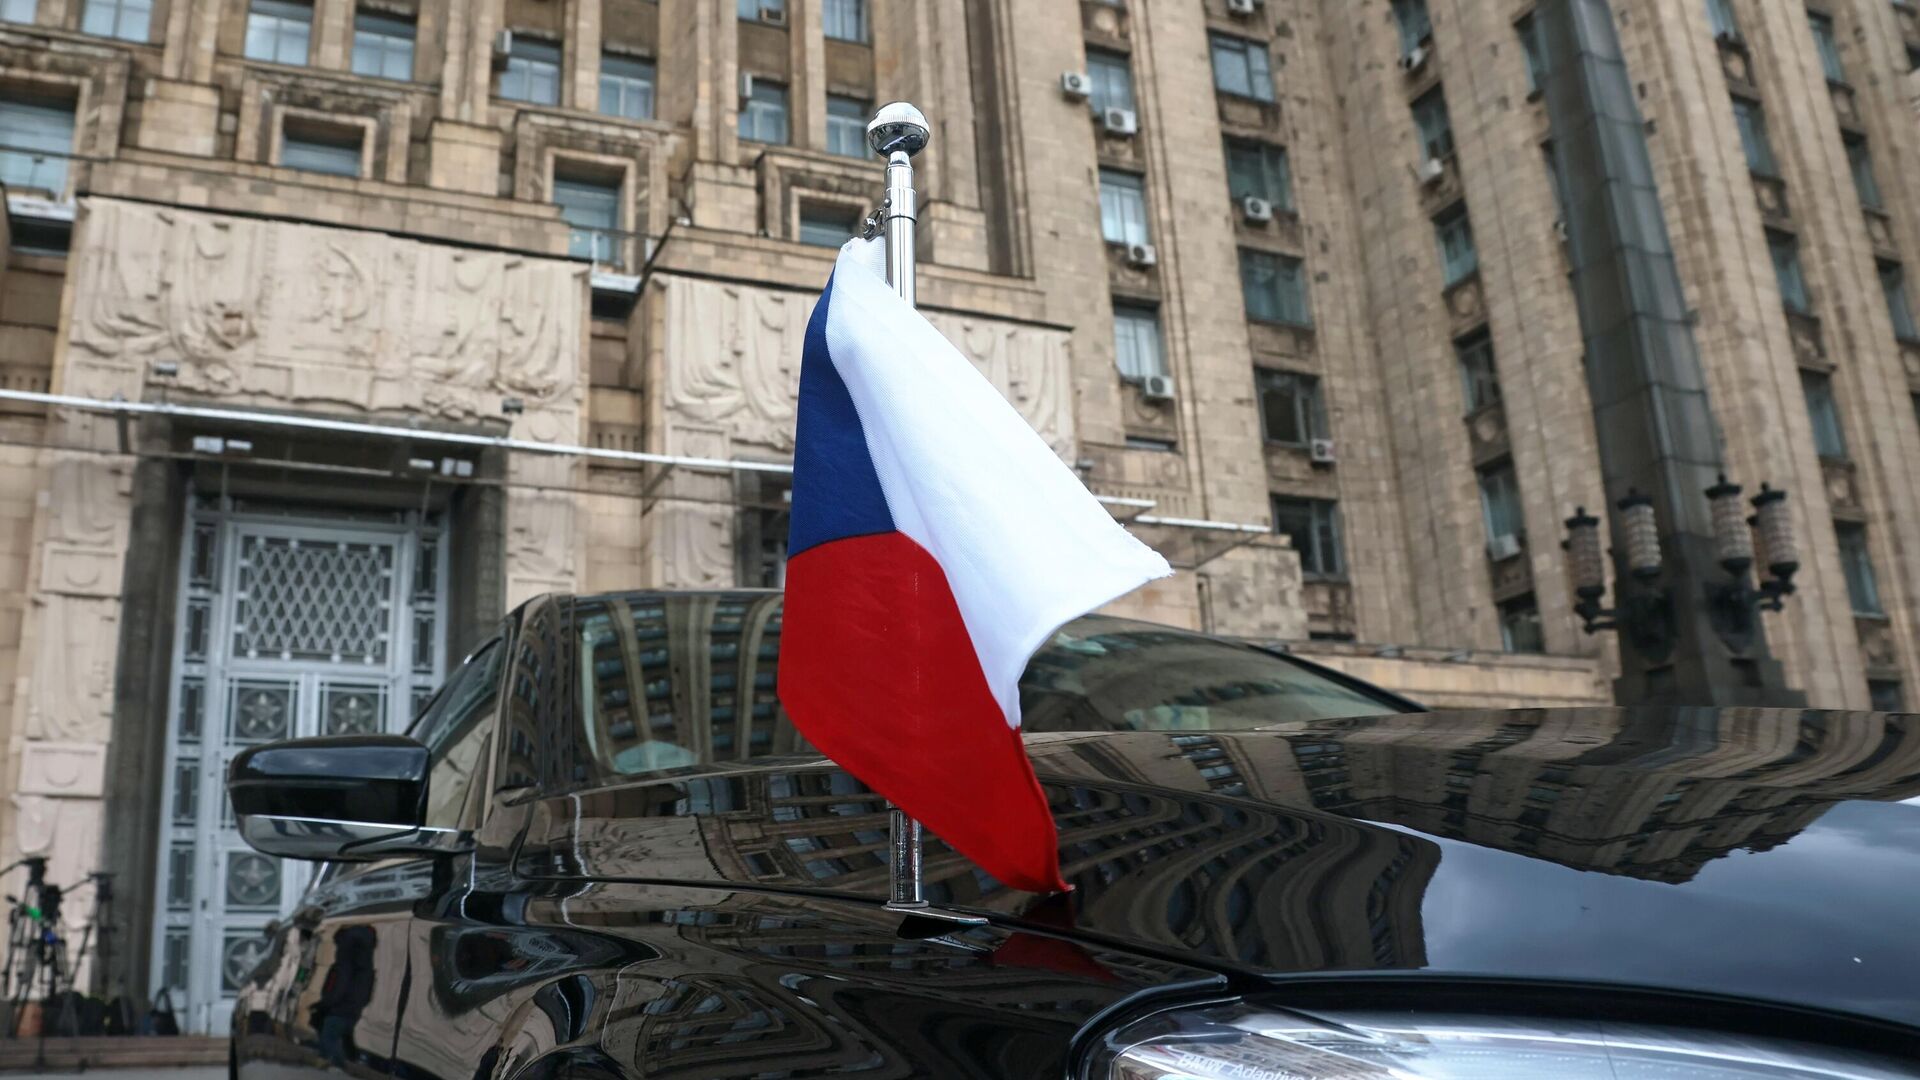 Автомобиль посольства Чехии в РФ возле здания МИД РФ в Москве - РИА Новости, 1920, 26.05.2021